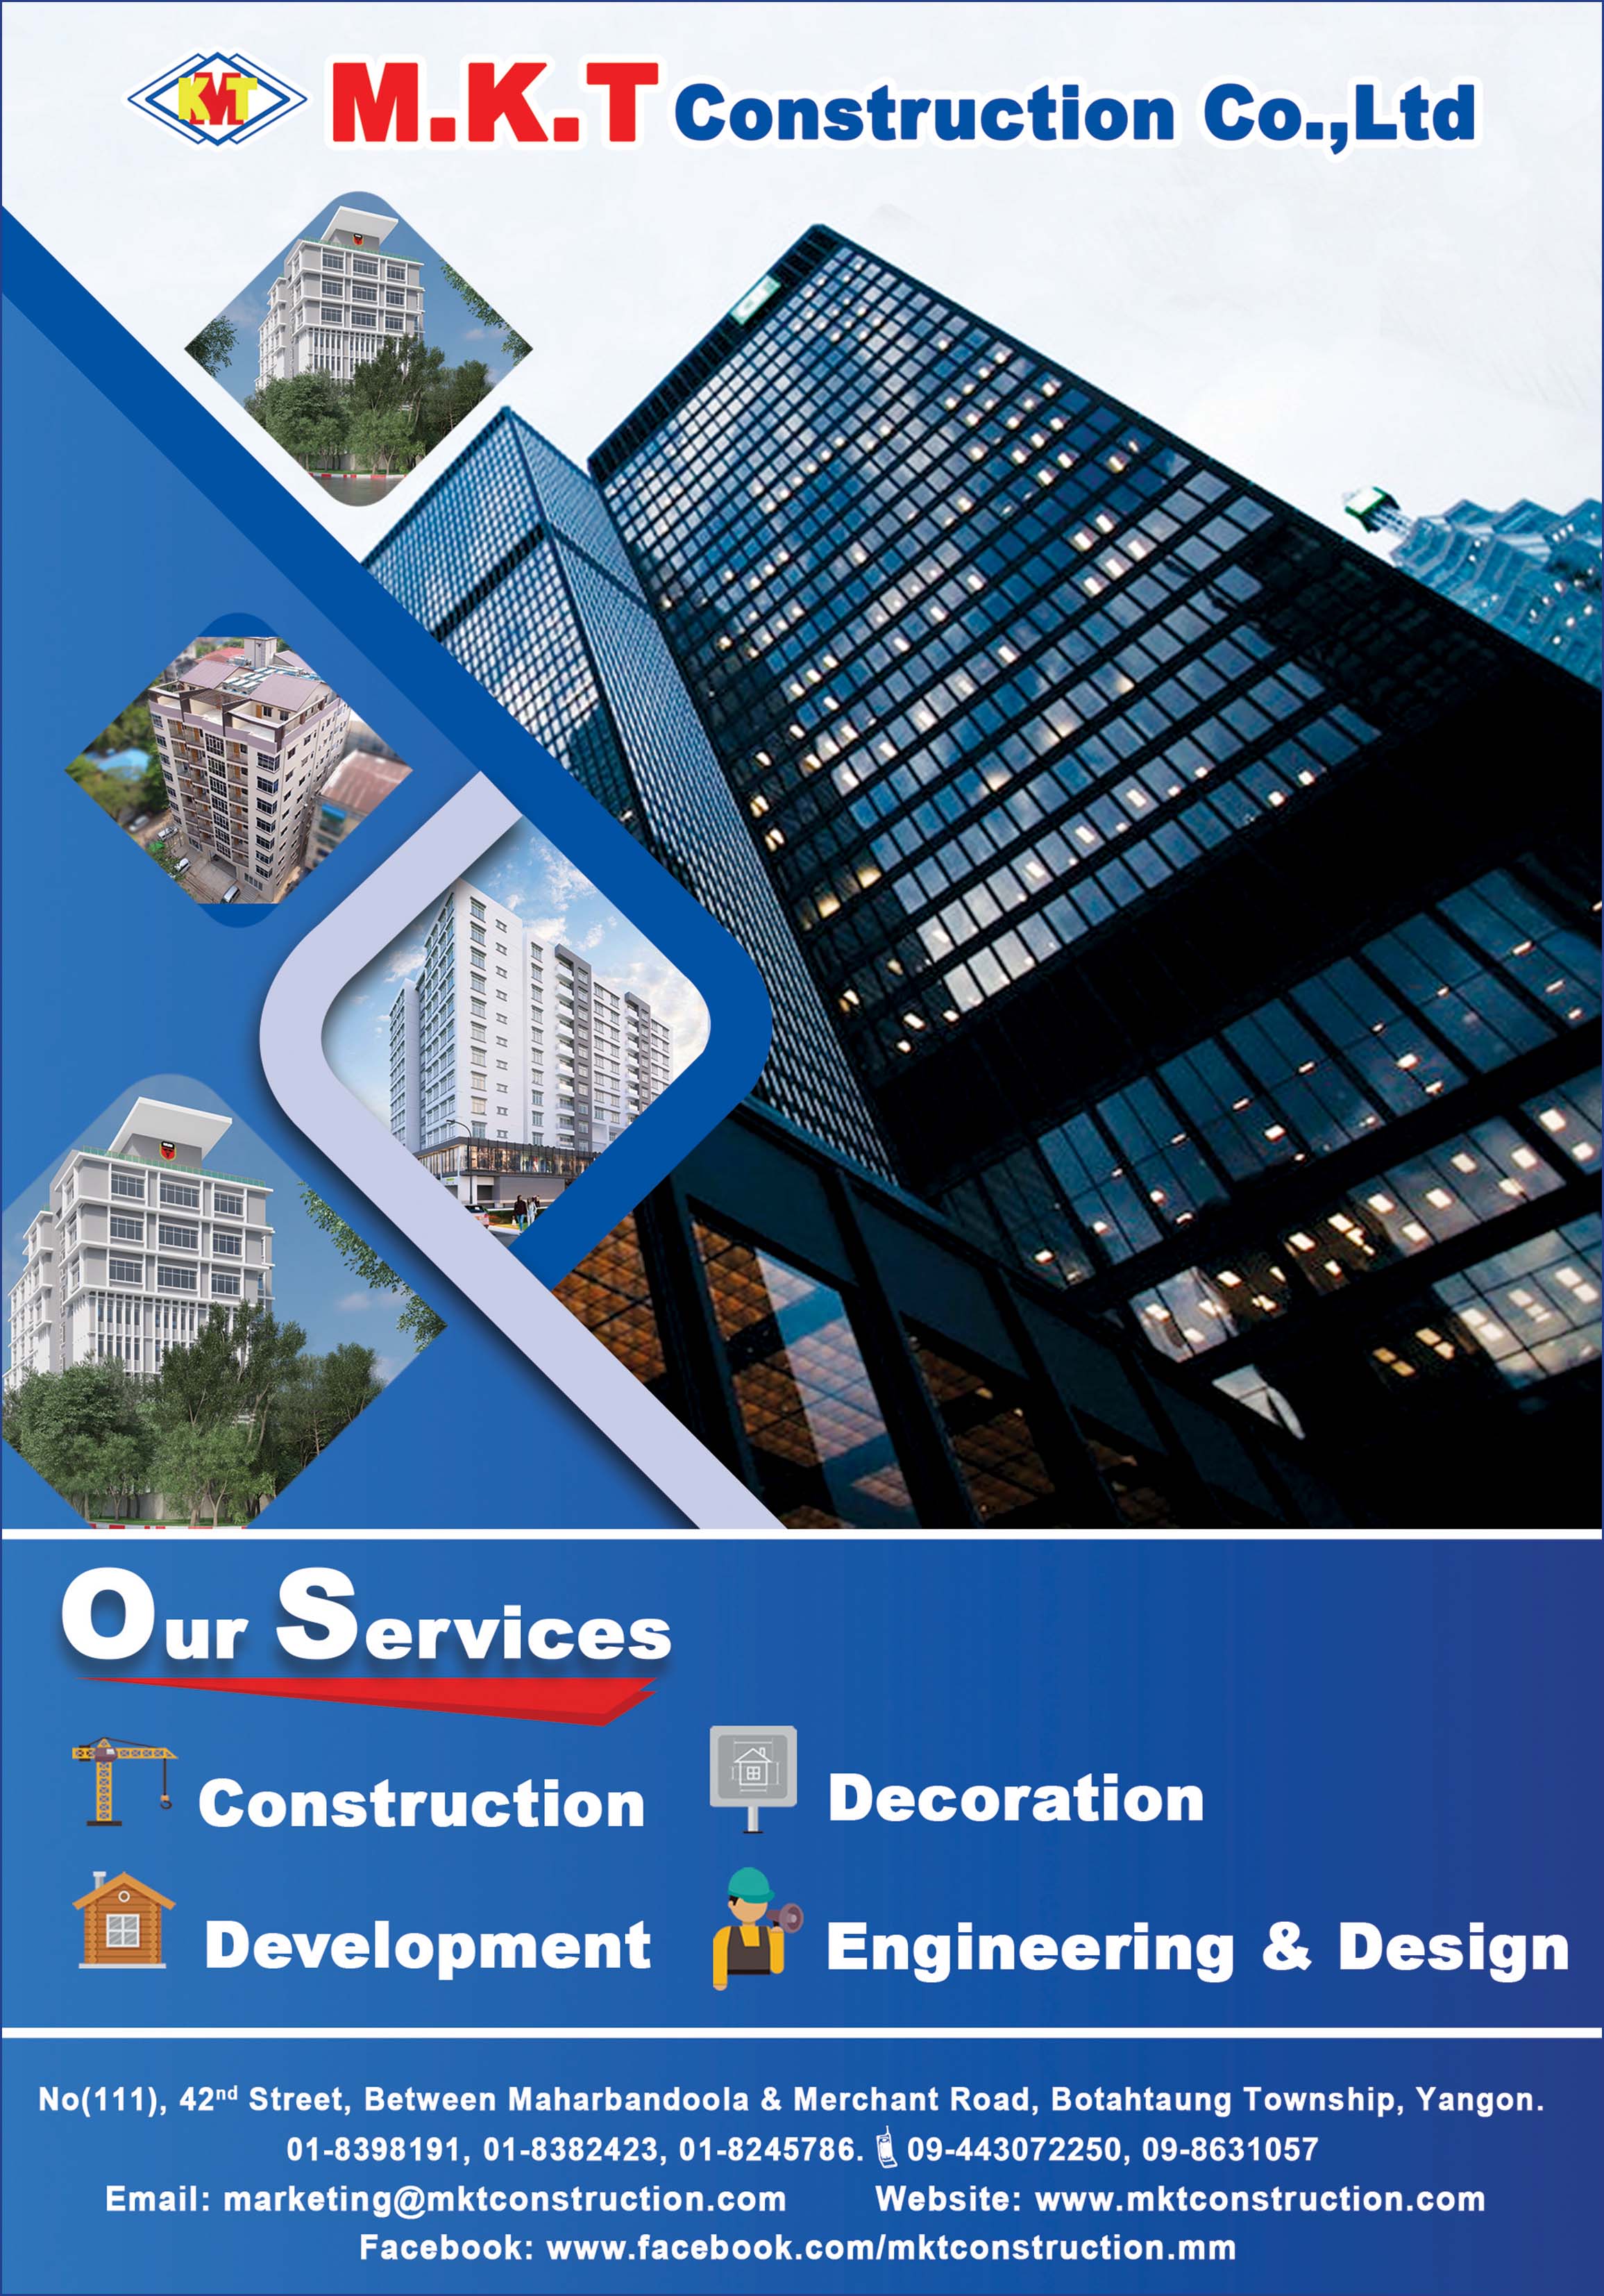 M.K.T Construction Co., Ltd.